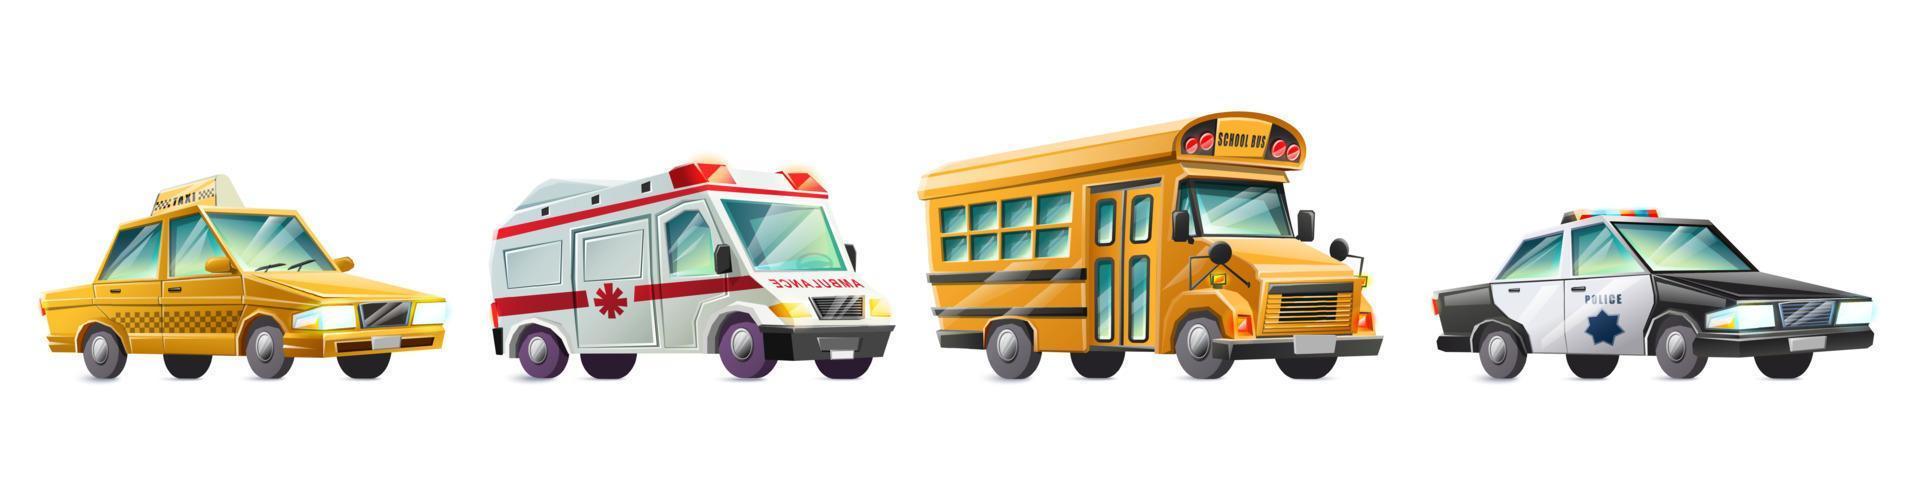 vector cartoon stijl collectie van kleurrijke kinderen vrachtwagens. geïsoleerd op een witte achtergrond.